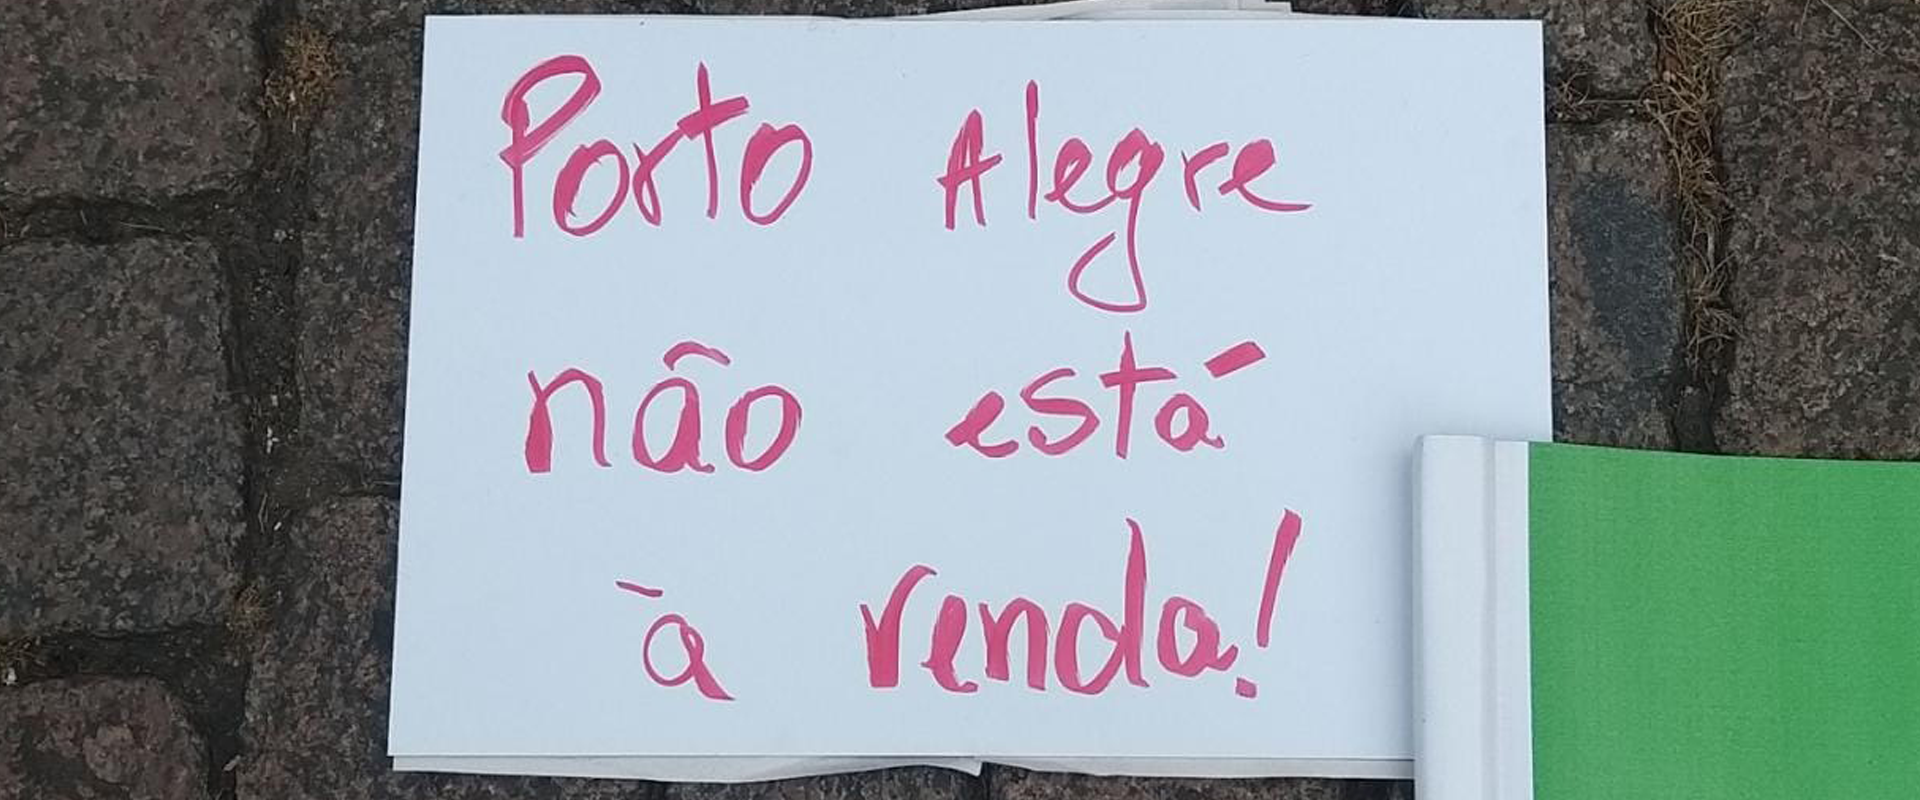 Entidades lançam movimento pelo direito à cidade em Porto Alegre